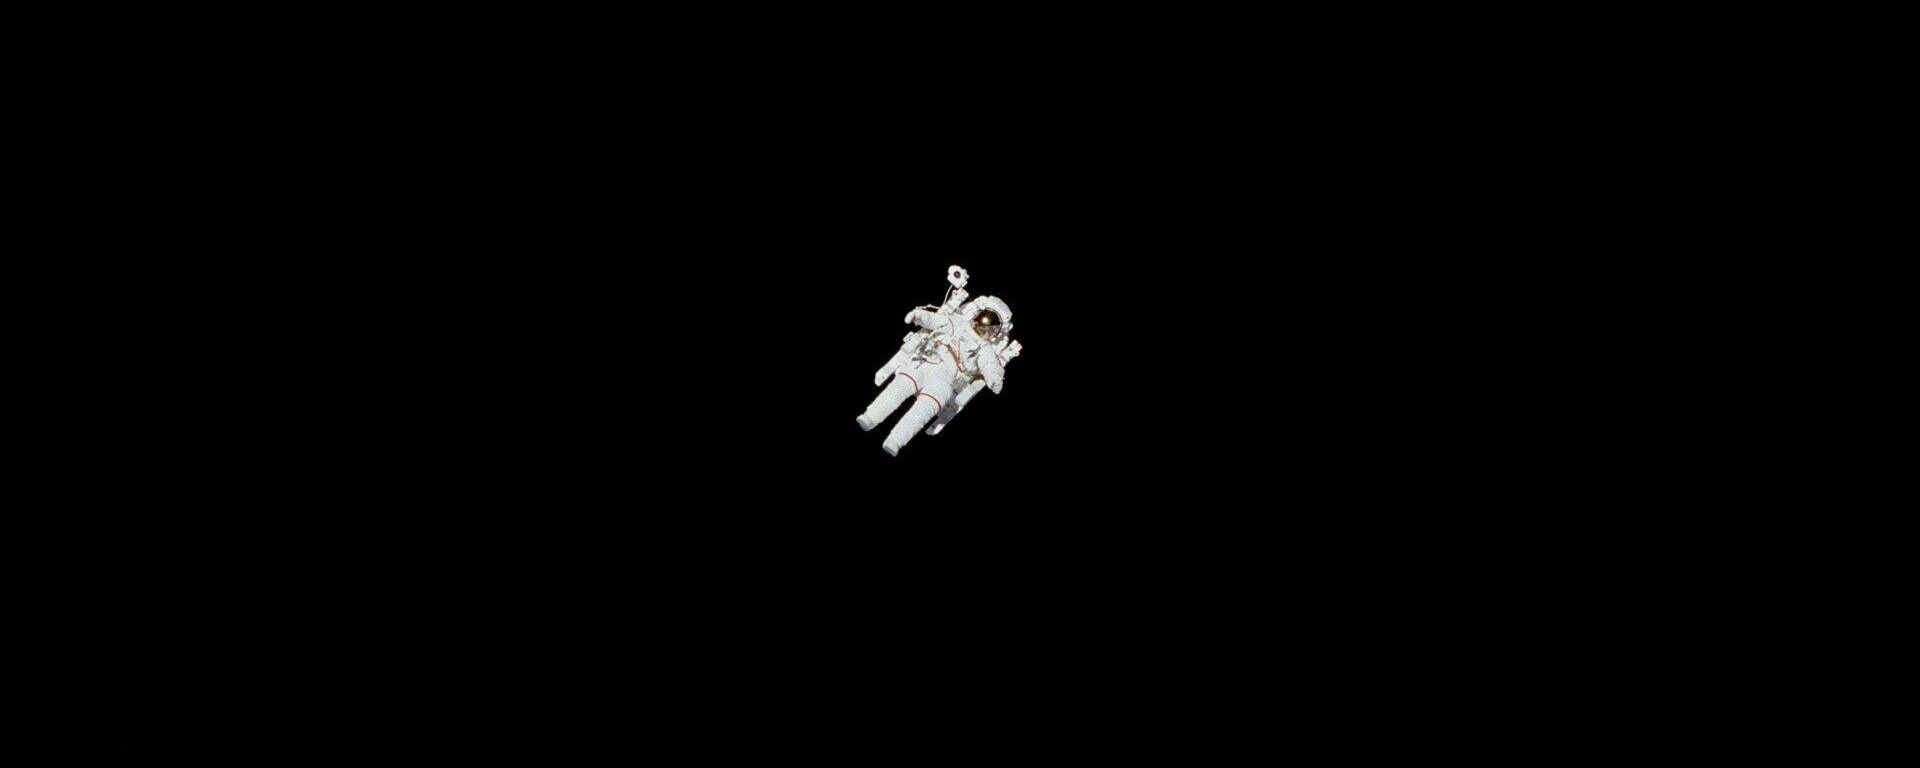 Un astronauta en el Espacio exterior - Sputnik Mundo, 1920, 18.10.2021